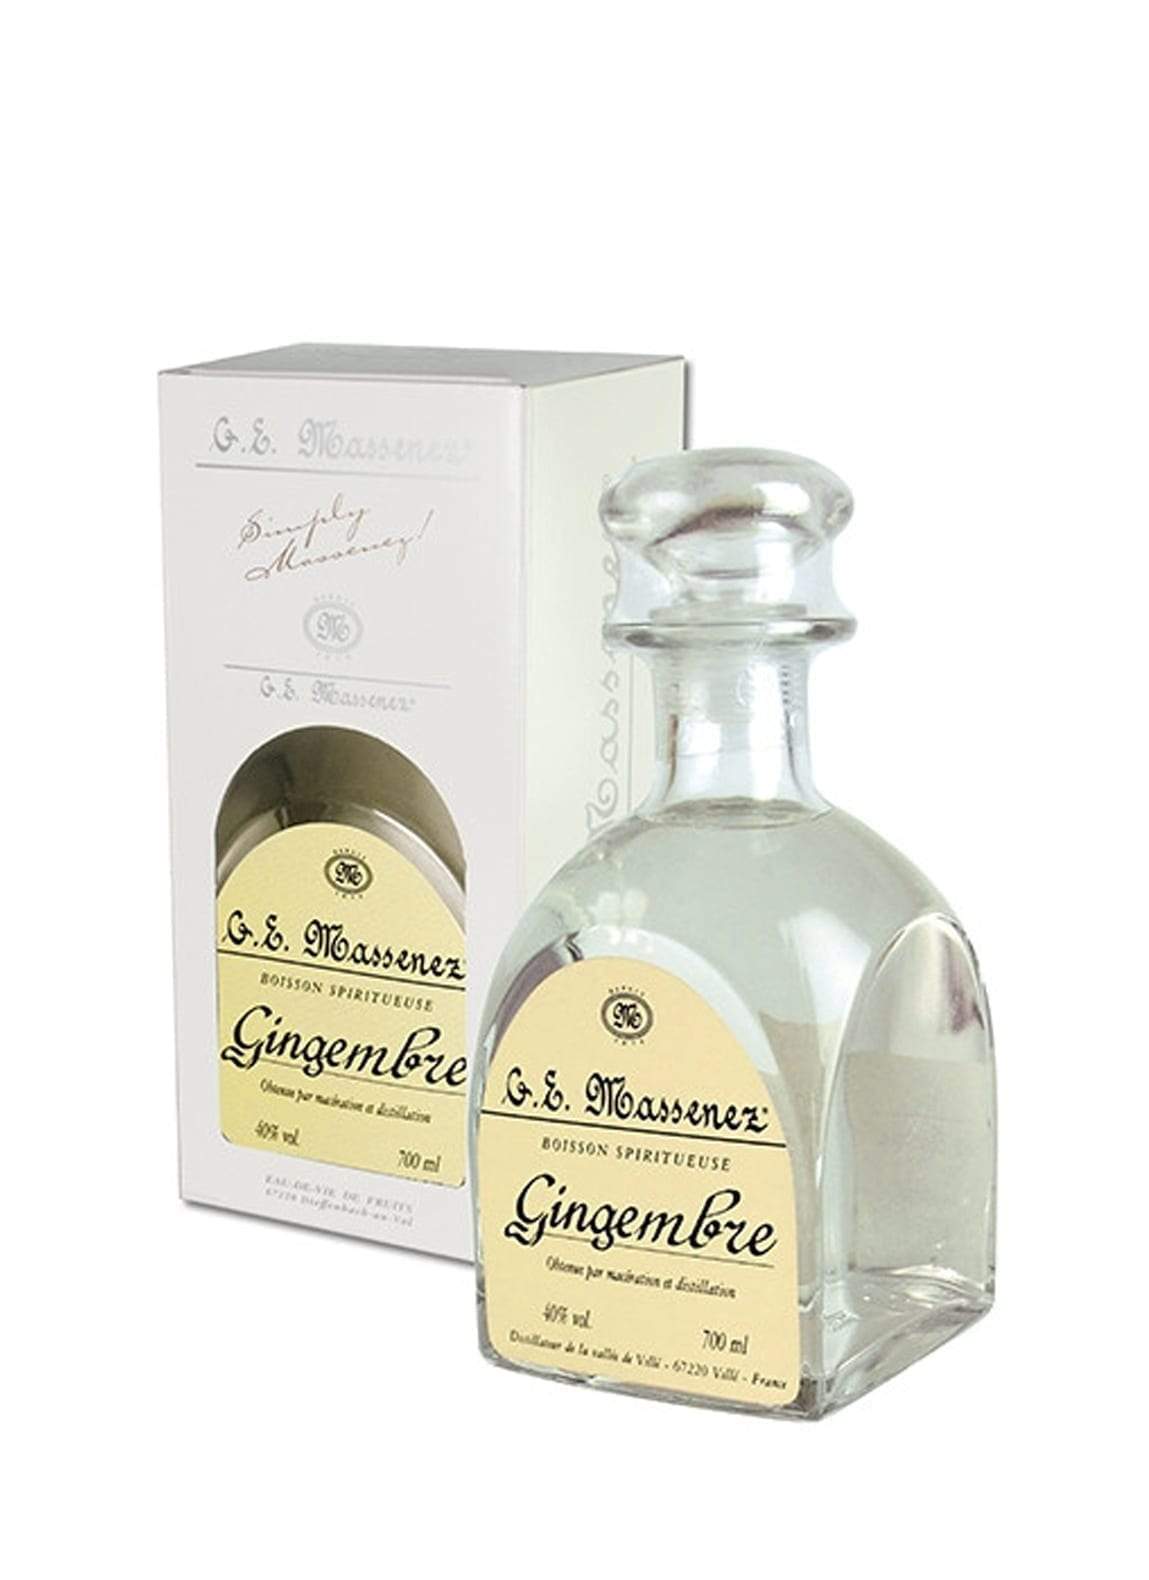 Massenez Eau de Vie de Gingembre (Ginger spirit) Carafe 40% 700ml | Liqueurs | Shop online at Spirits of France